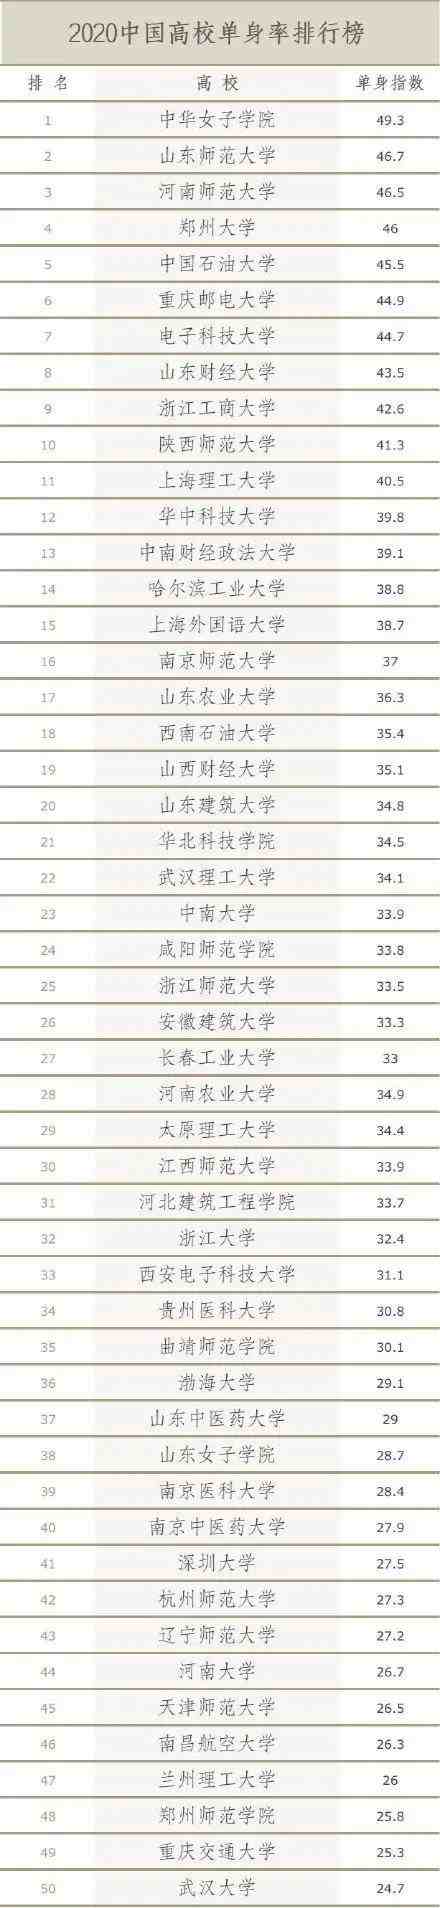 中国高校单身率排行